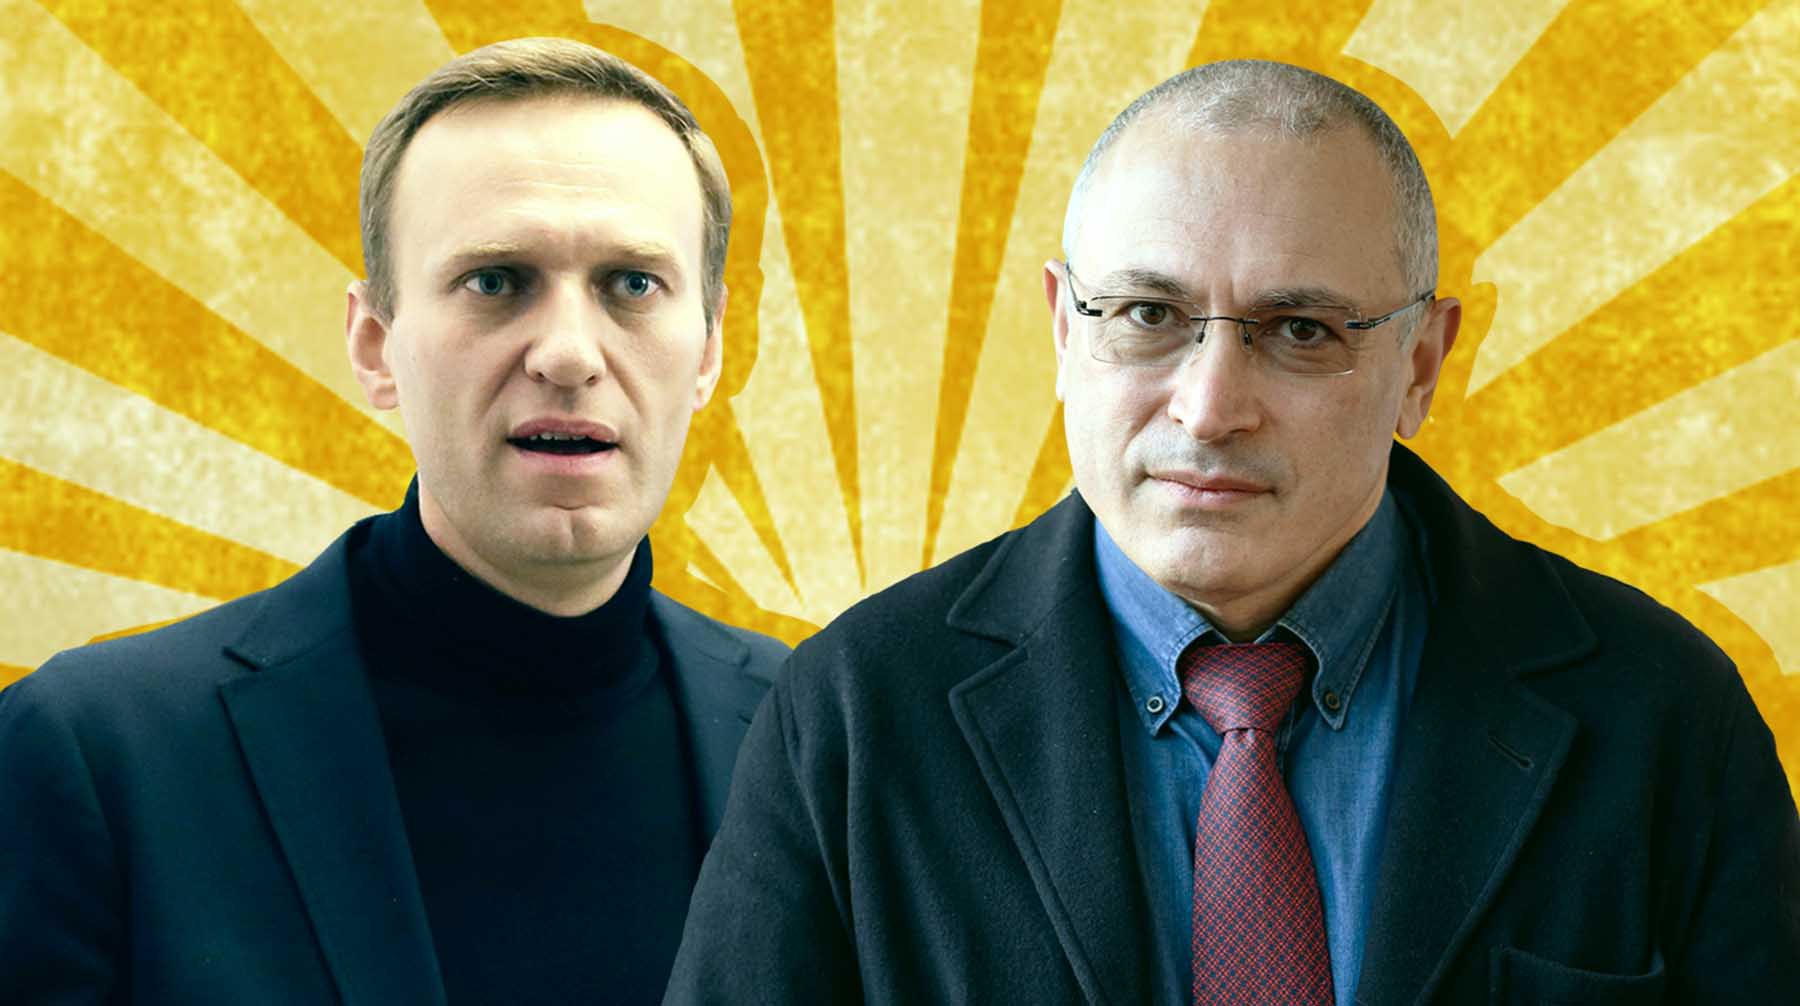 Dailystorm - Команда Ходорковского обвинила соратников Навального в «монополии на истину» после критики Ельцина и реформаторов 90-х